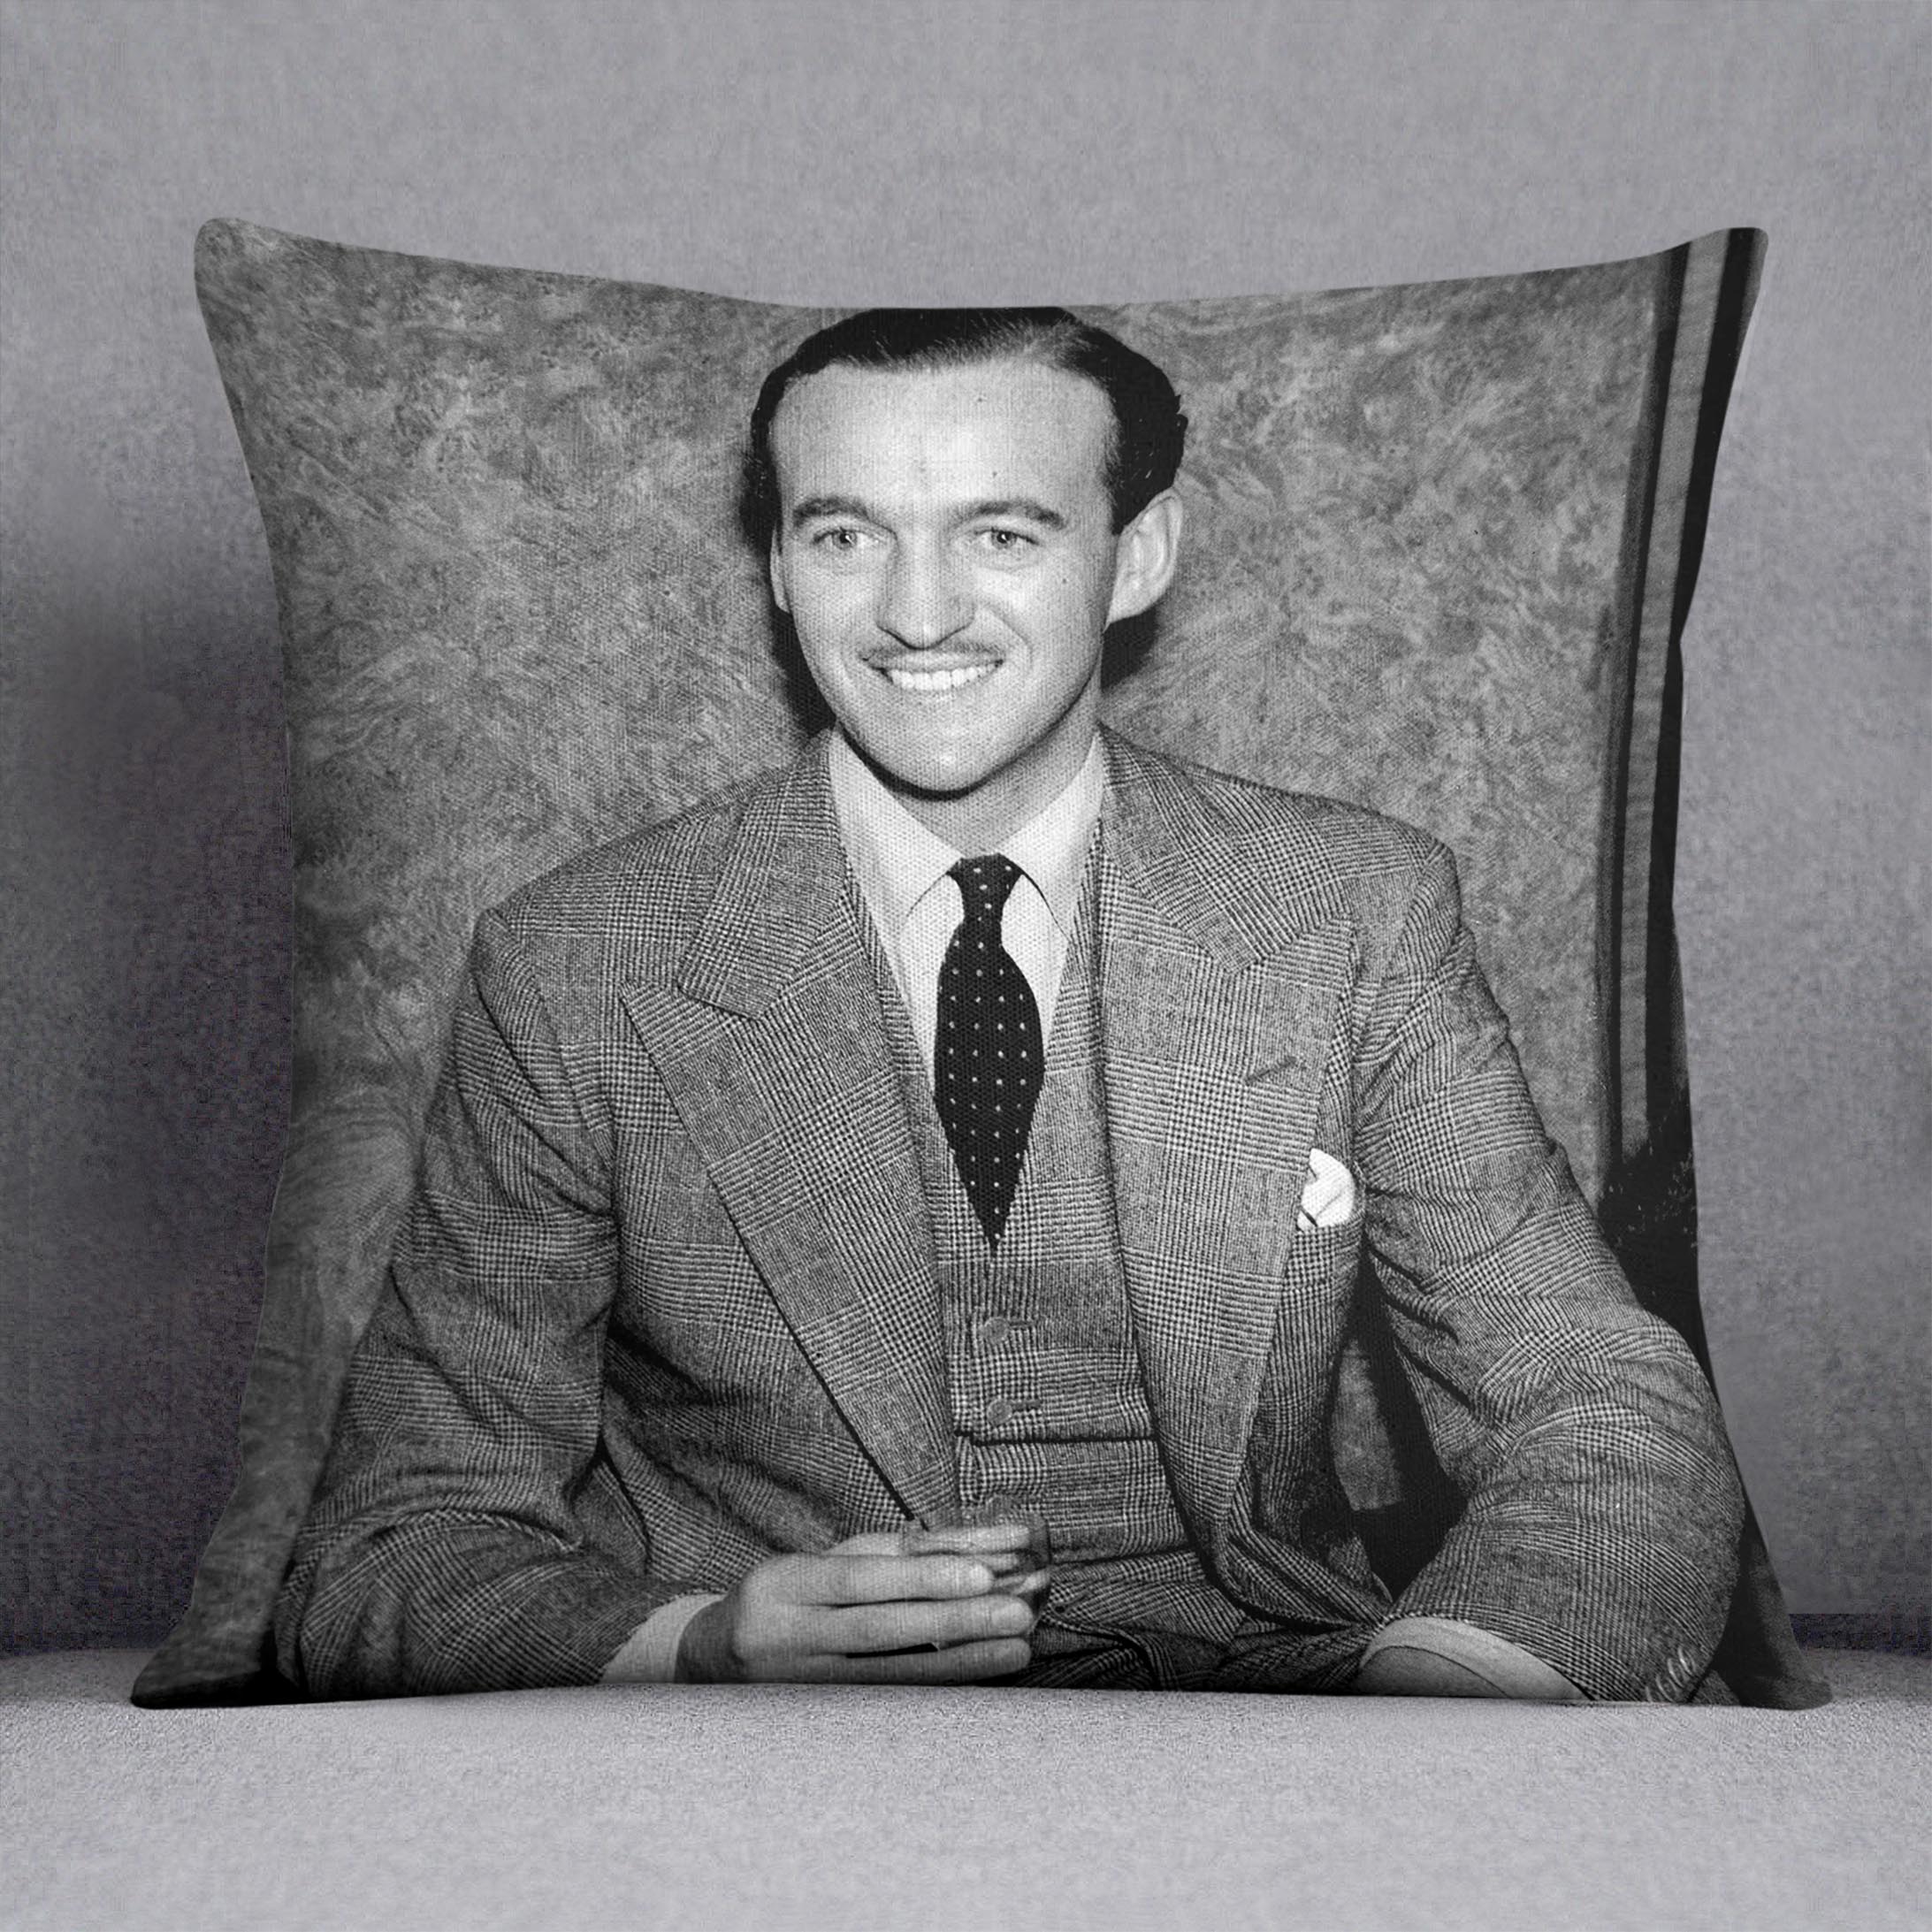 Actor David Niven in 1939 Cushion